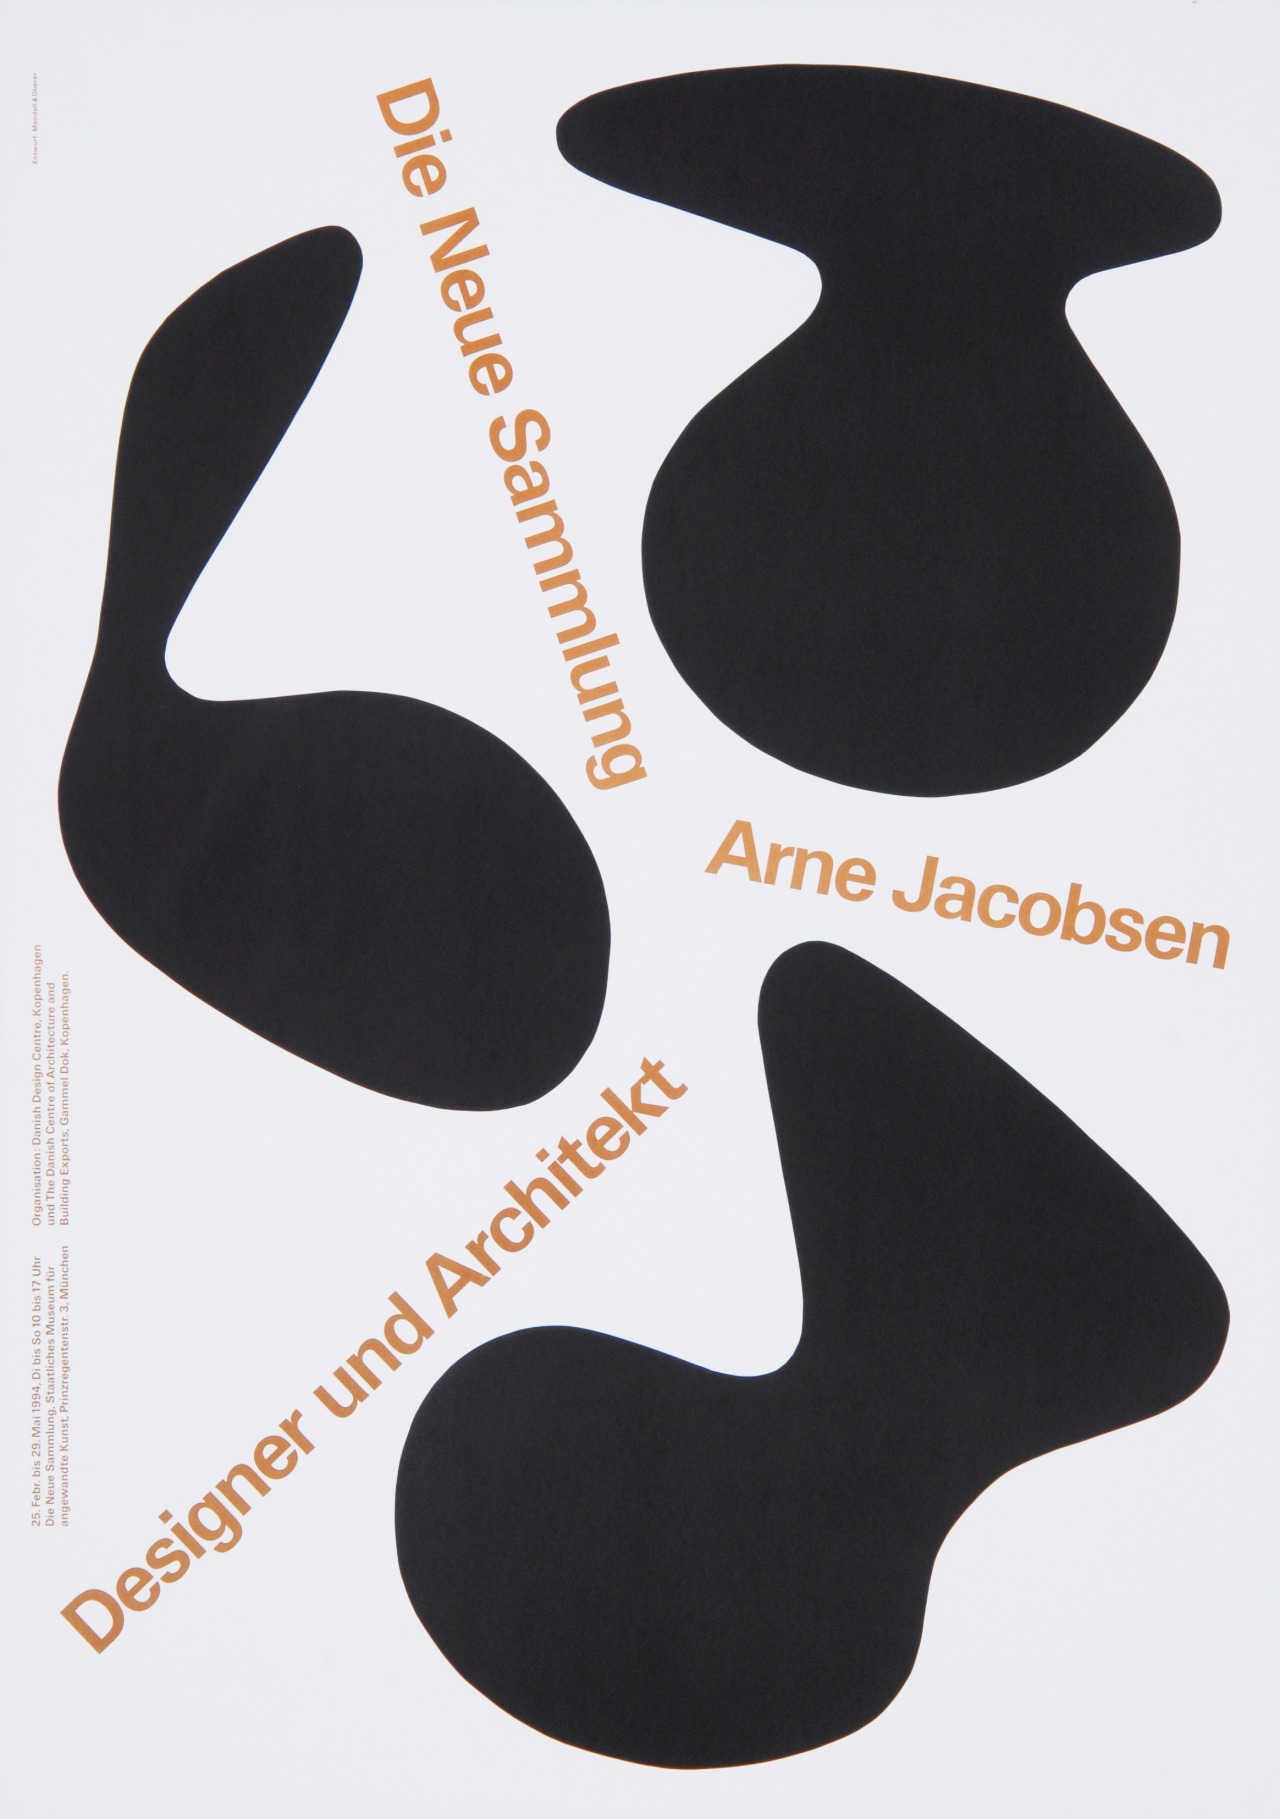 Pierre Mendell, poster for an exhibition, Design Studio Mendell & Oberer, 1994. © 2008 Die Neue Sammlung München